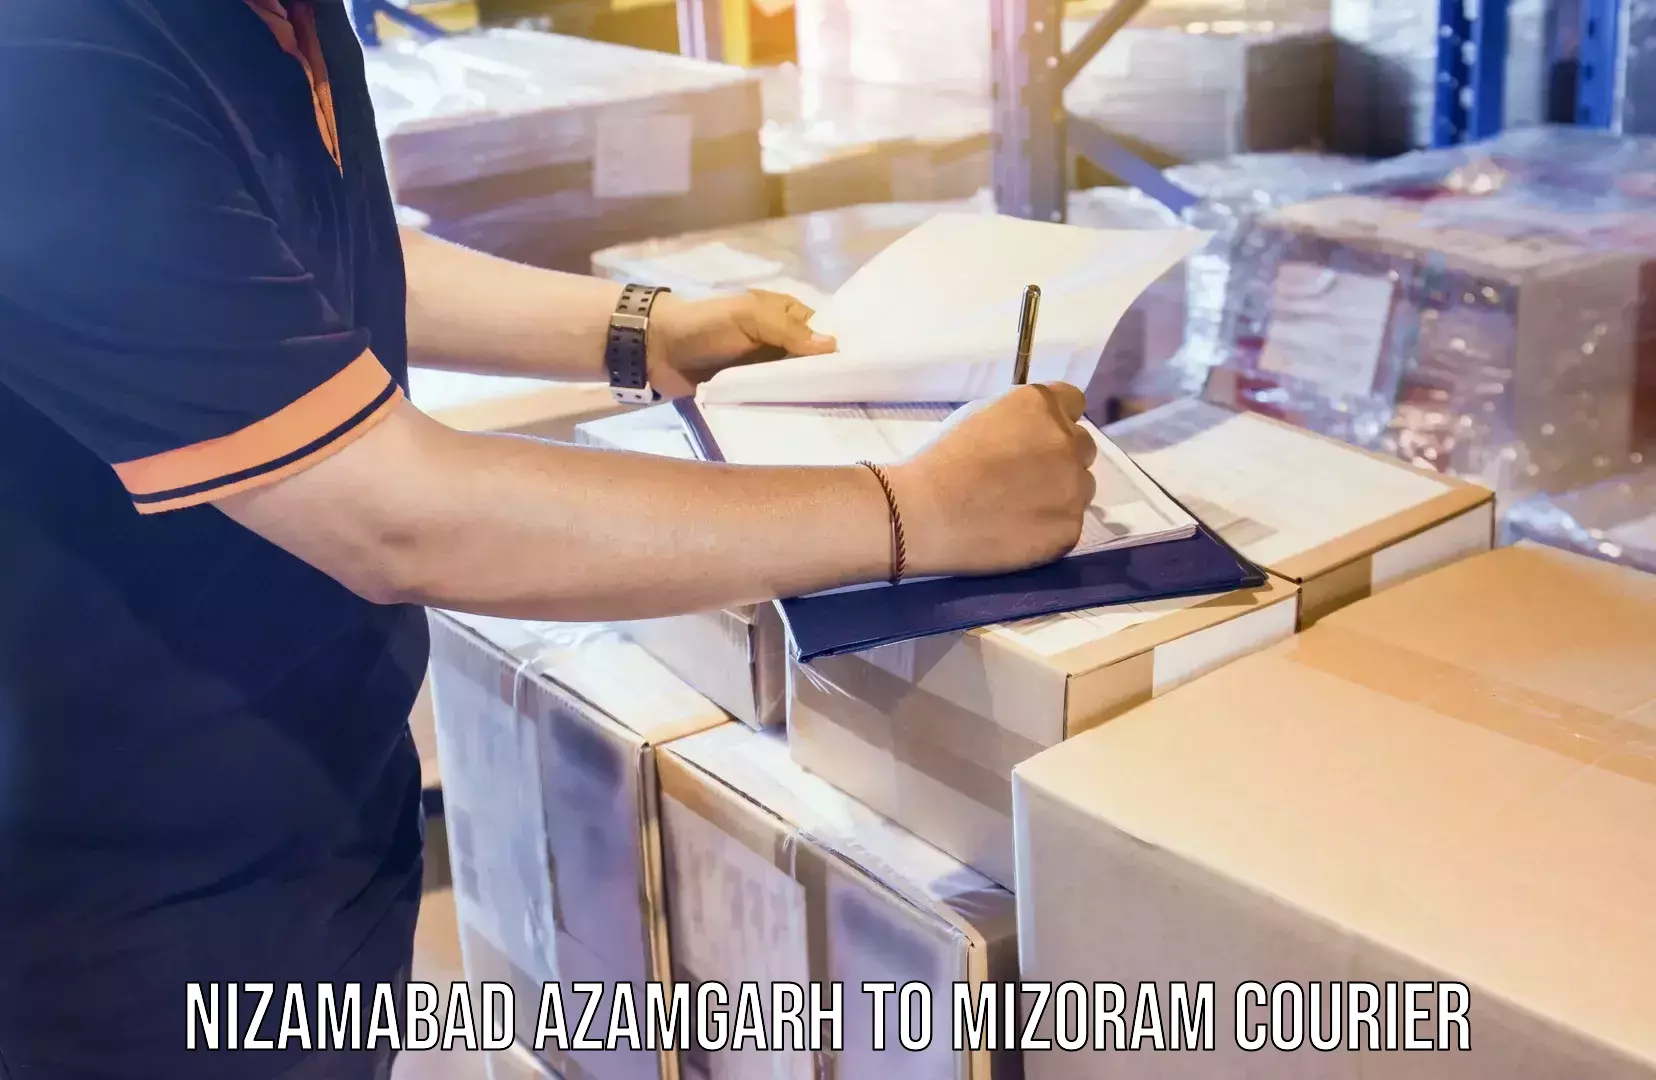 Skilled furniture transporters Nizamabad Azamgarh to Mizoram